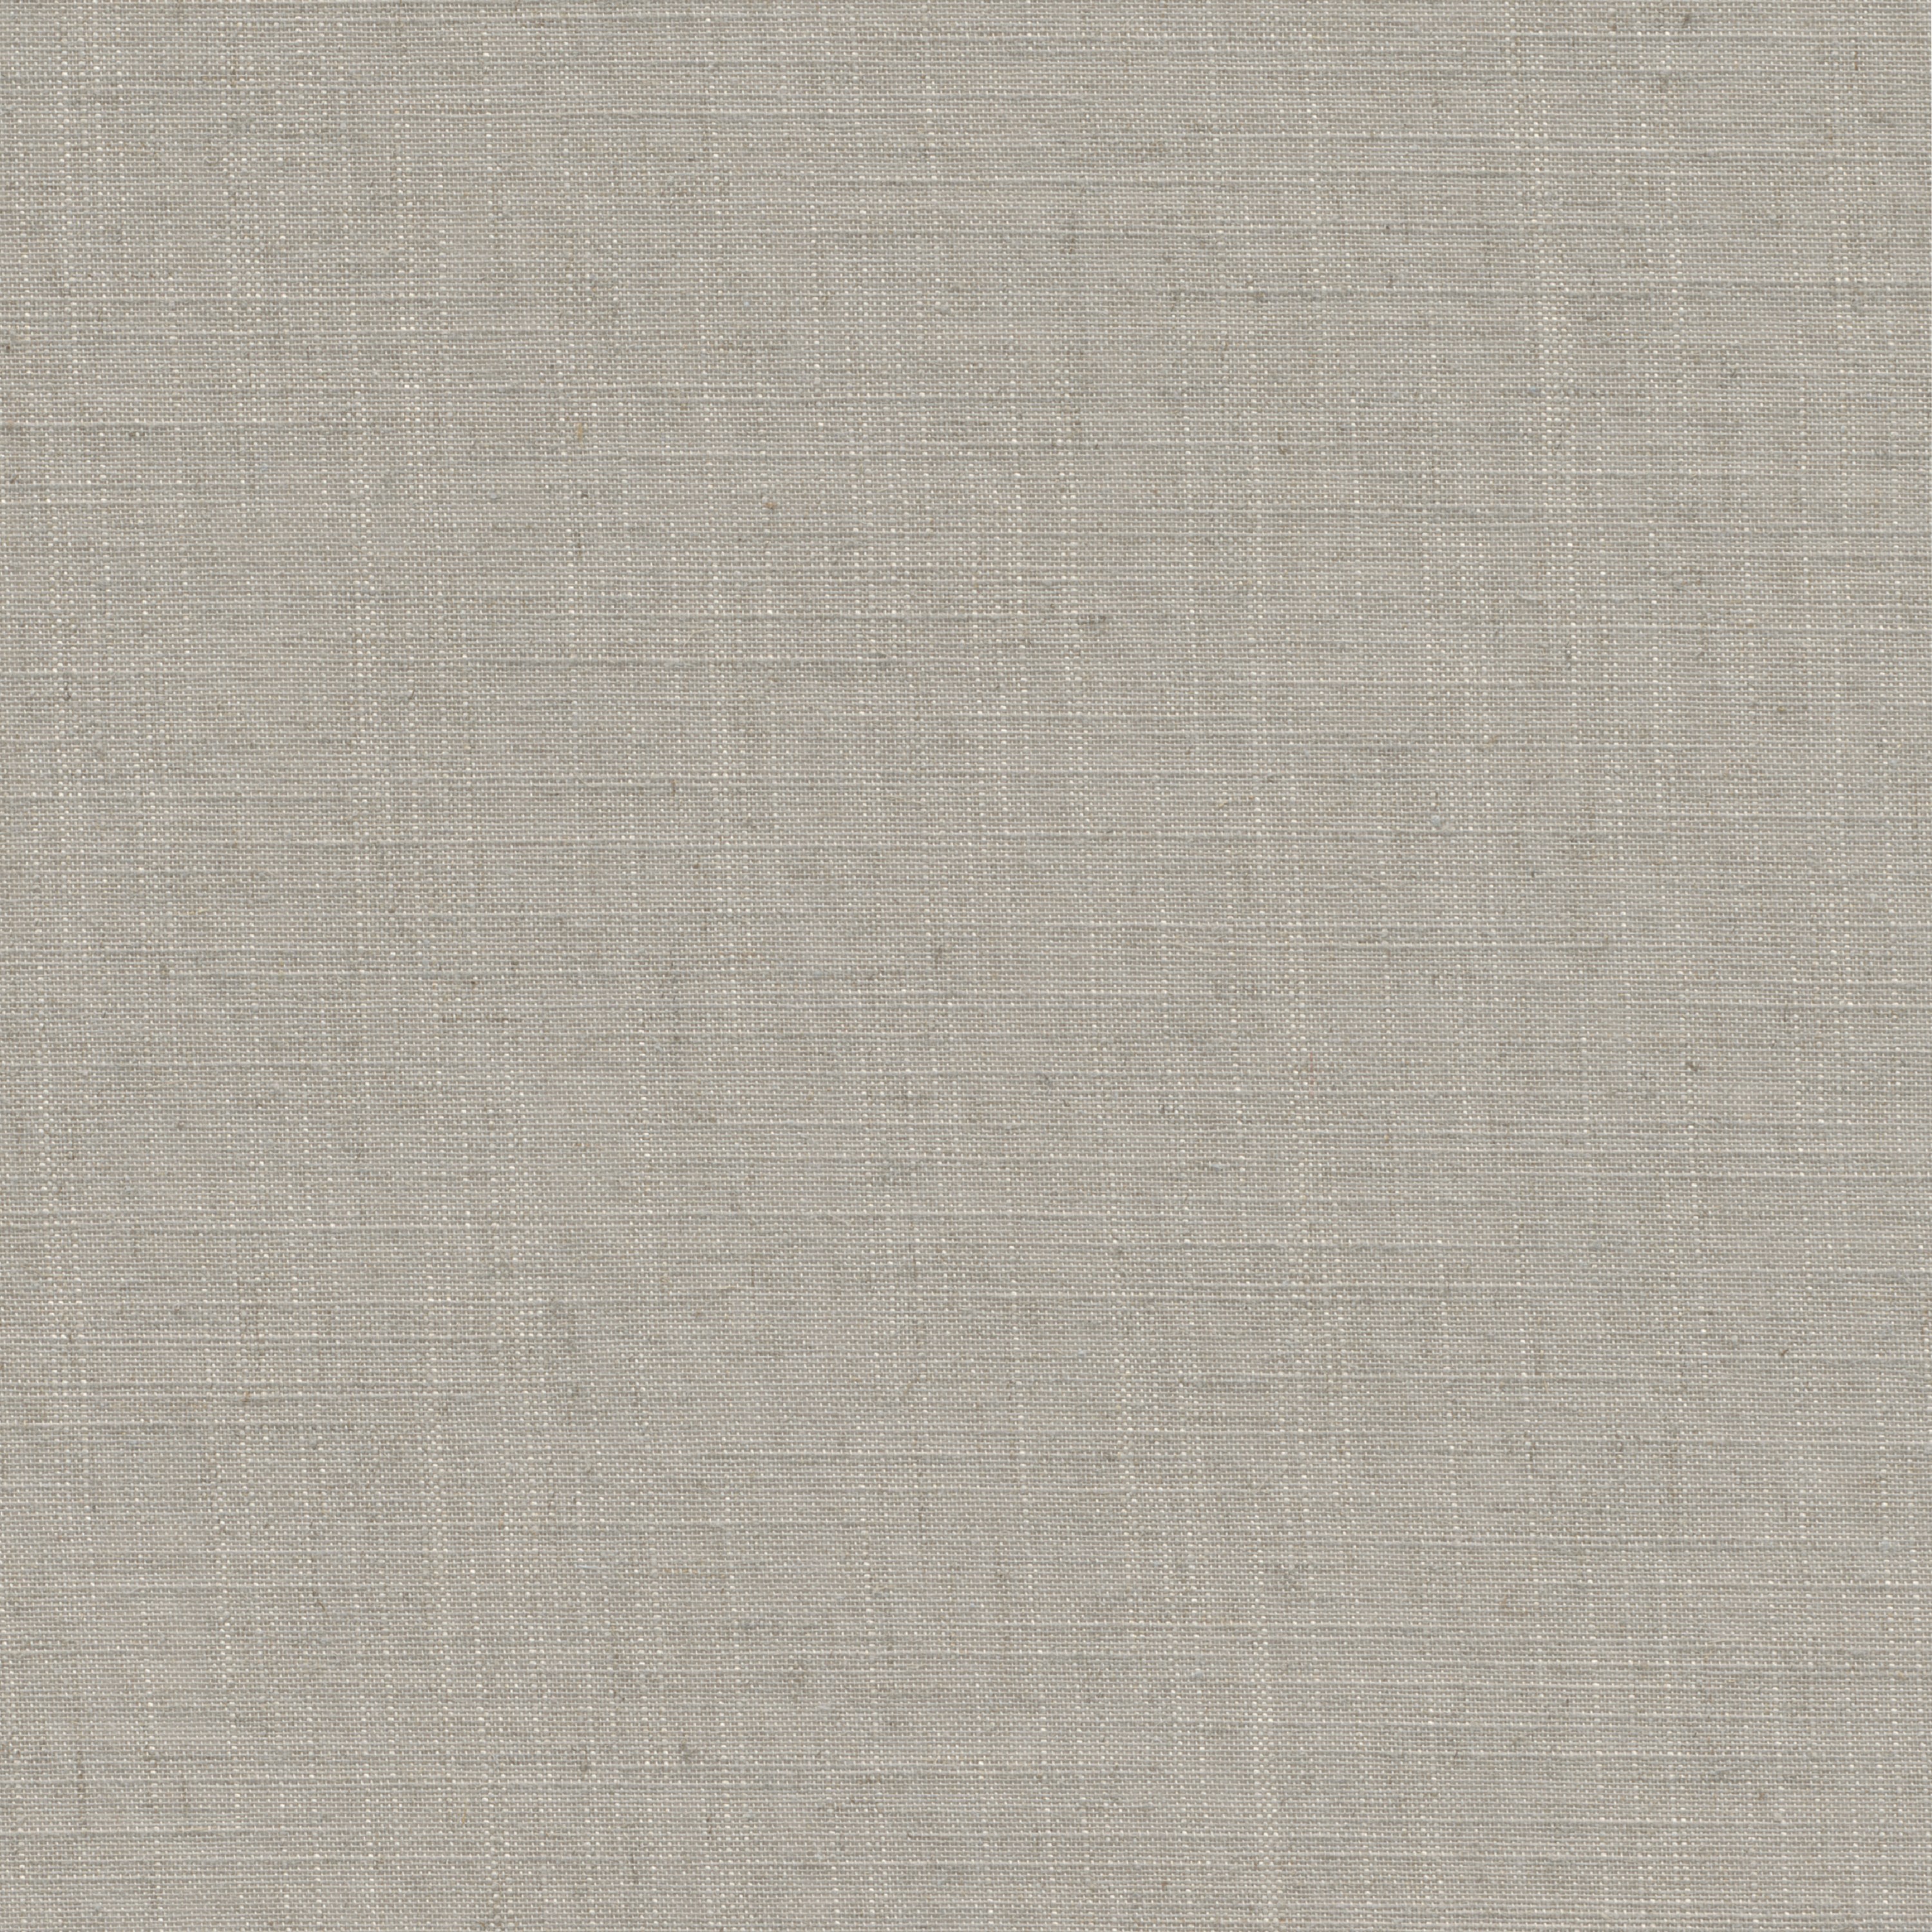 Tessuto per tende a rullo filtrante INSPIRE Brisbane beige 62 x 190 cm - 4